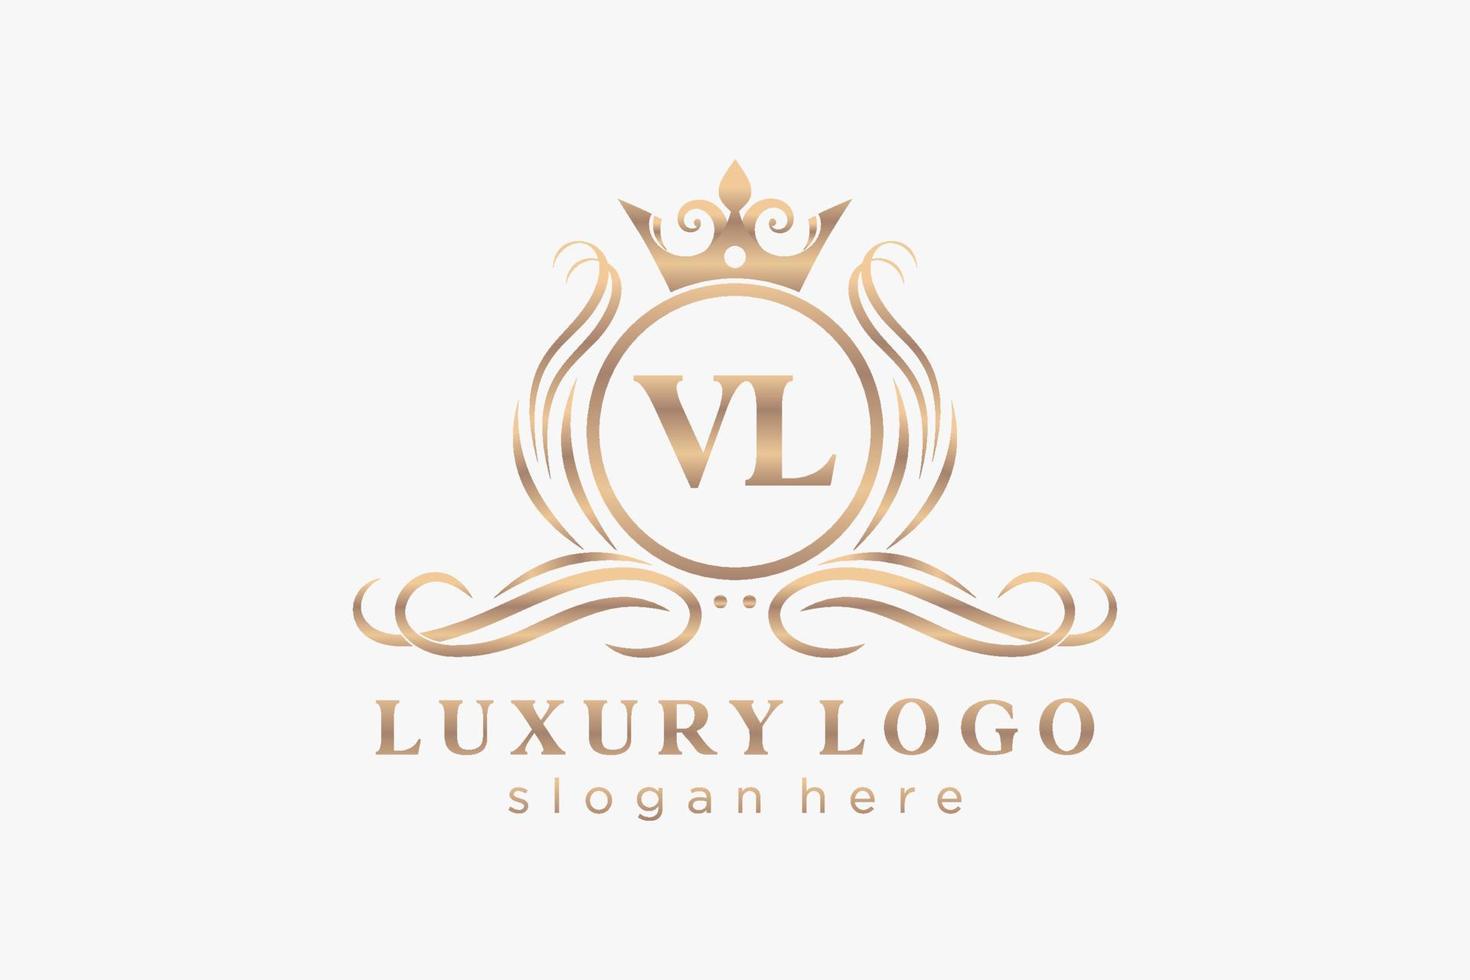 Royal Luxury Logo-Vorlage mit anfänglichem vl-Buchstaben in Vektorgrafiken für Restaurant, Lizenzgebühren, Boutique, Café, Hotel, Heraldik, Schmuck, Mode und andere Vektorillustrationen. vektor